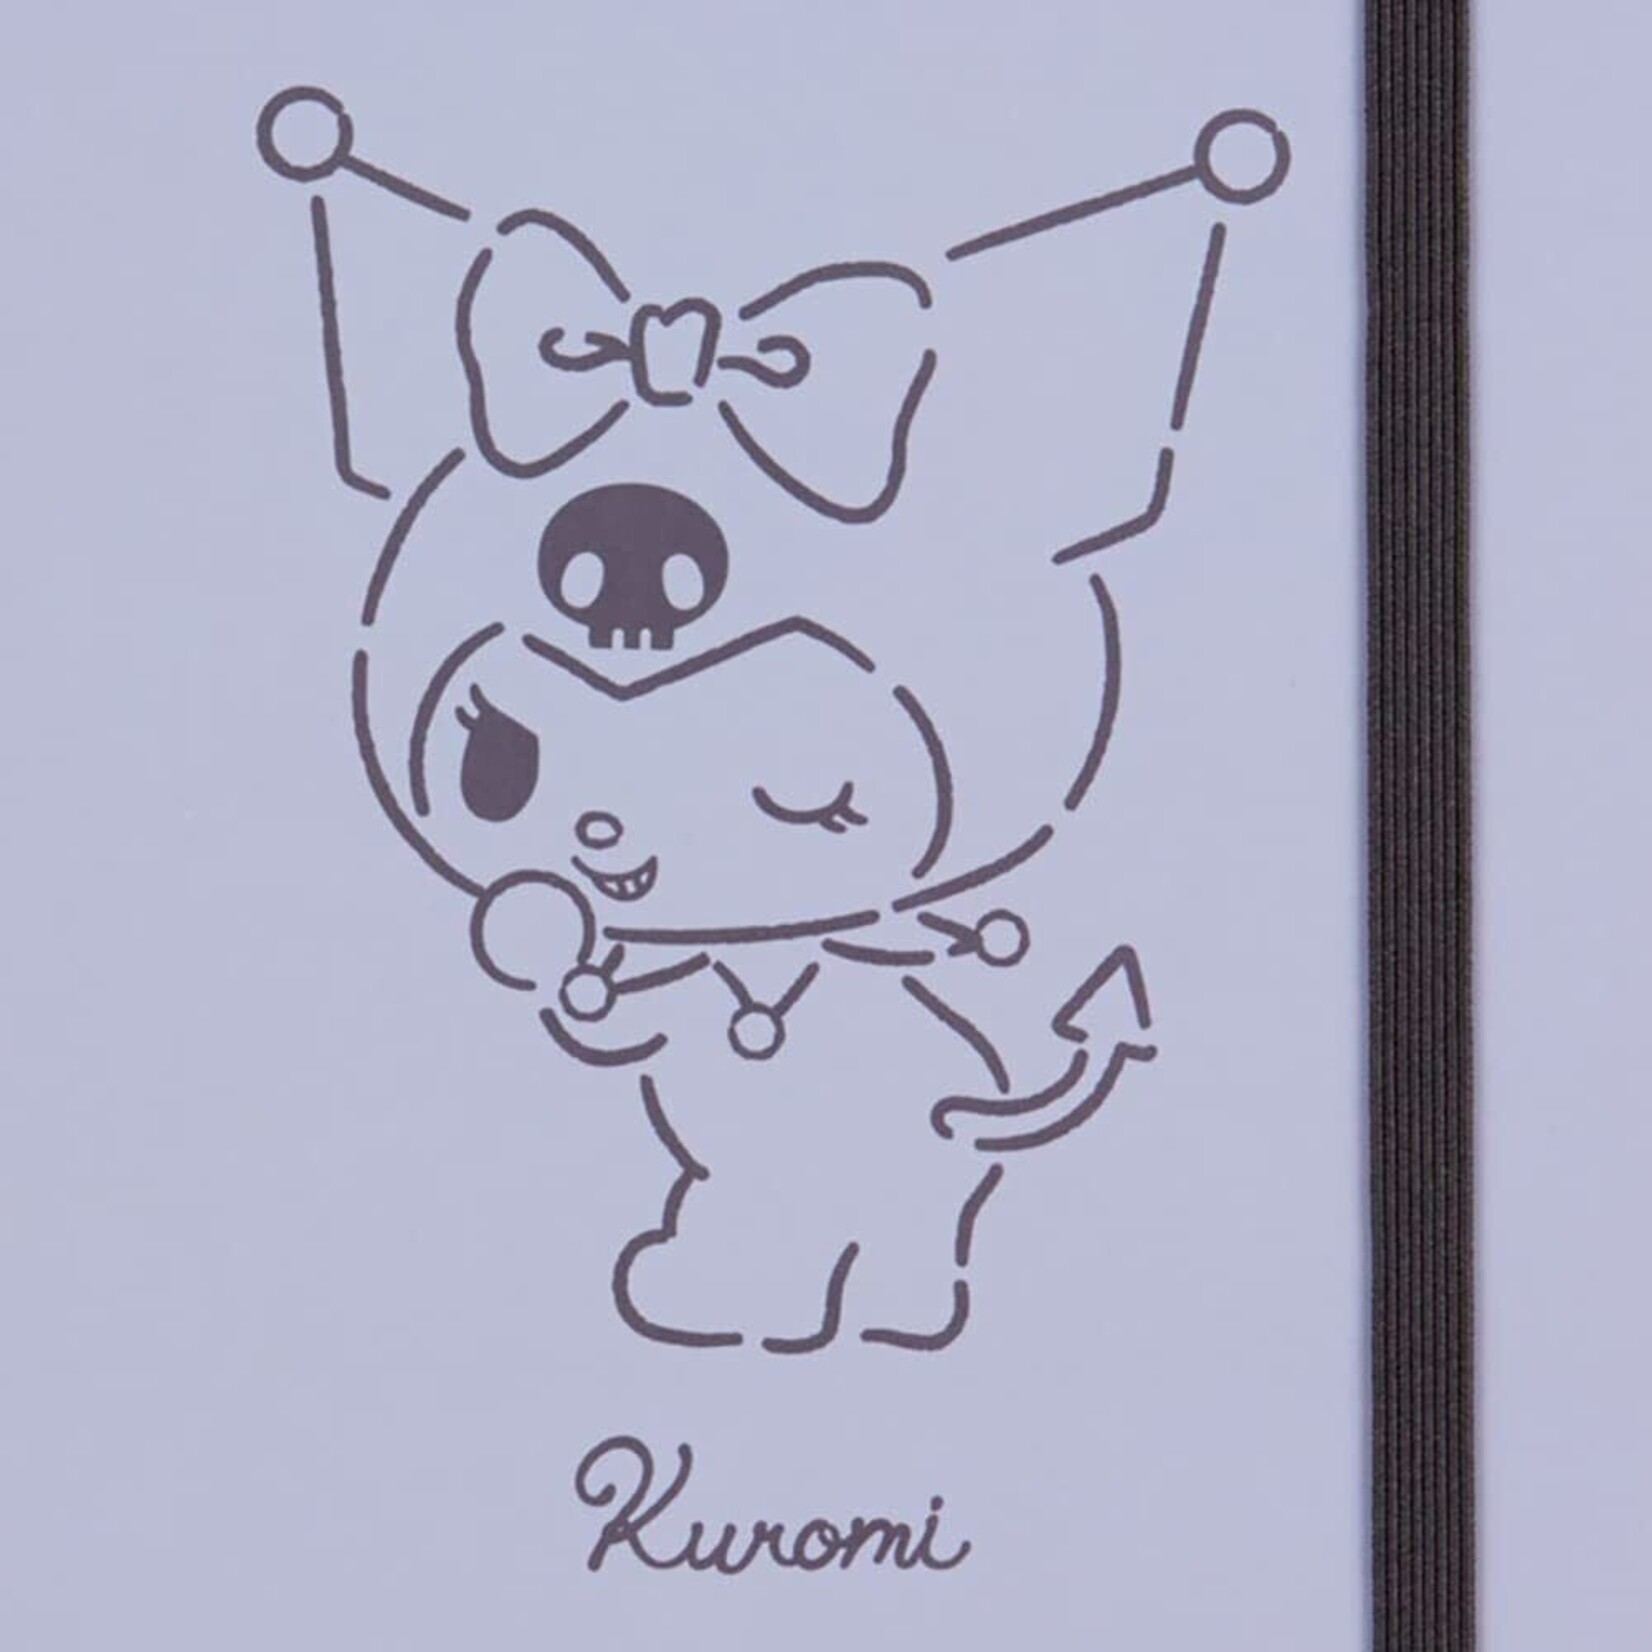 A notebook calm kuromi